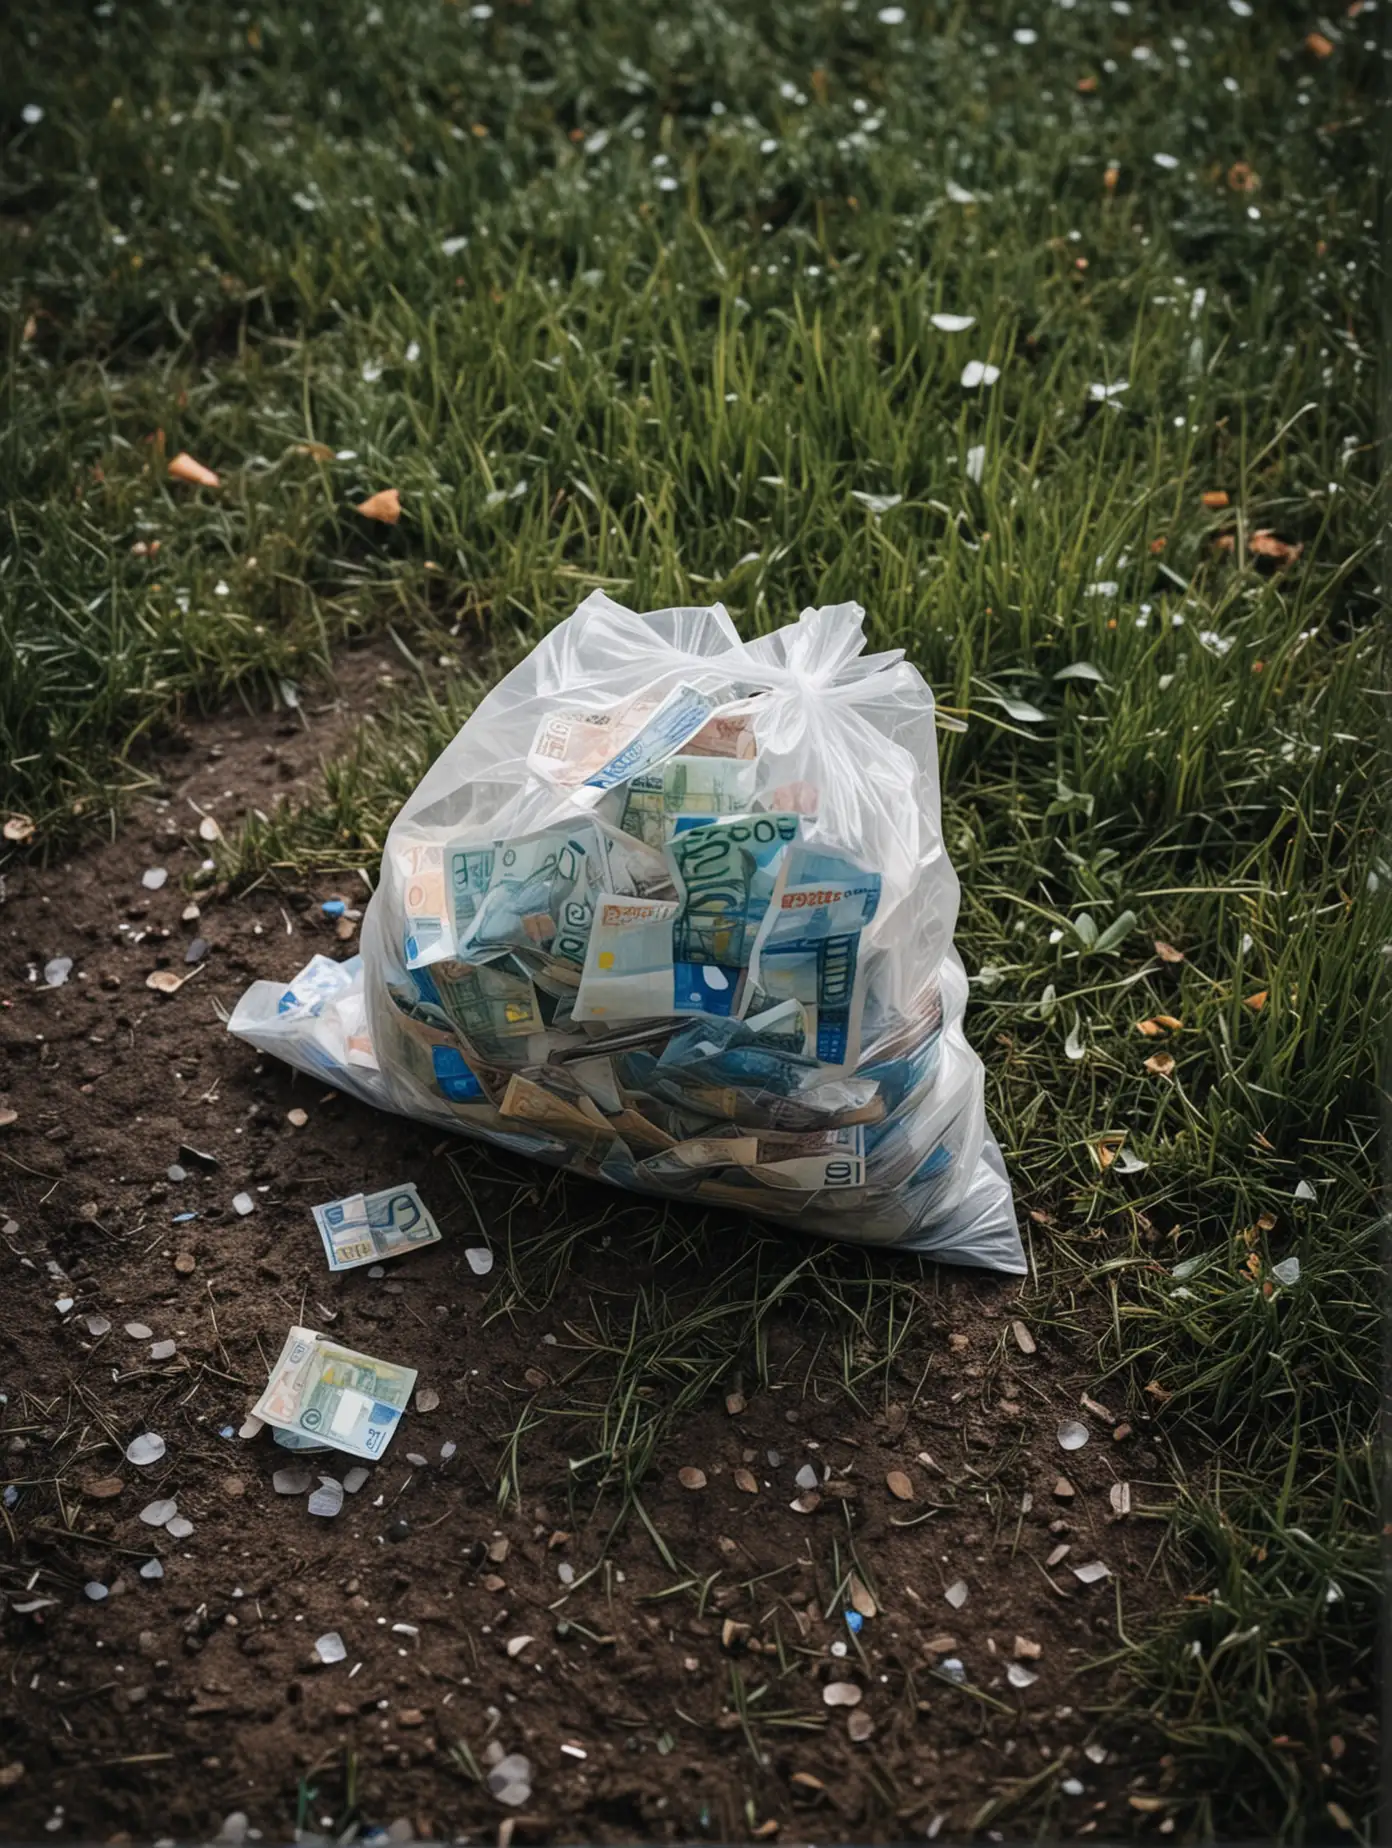 ambiance tropical glauque de nuit,
un sac plastique  rempli de petits billets d'euros pausé sur le sol avec un peu d'herbe